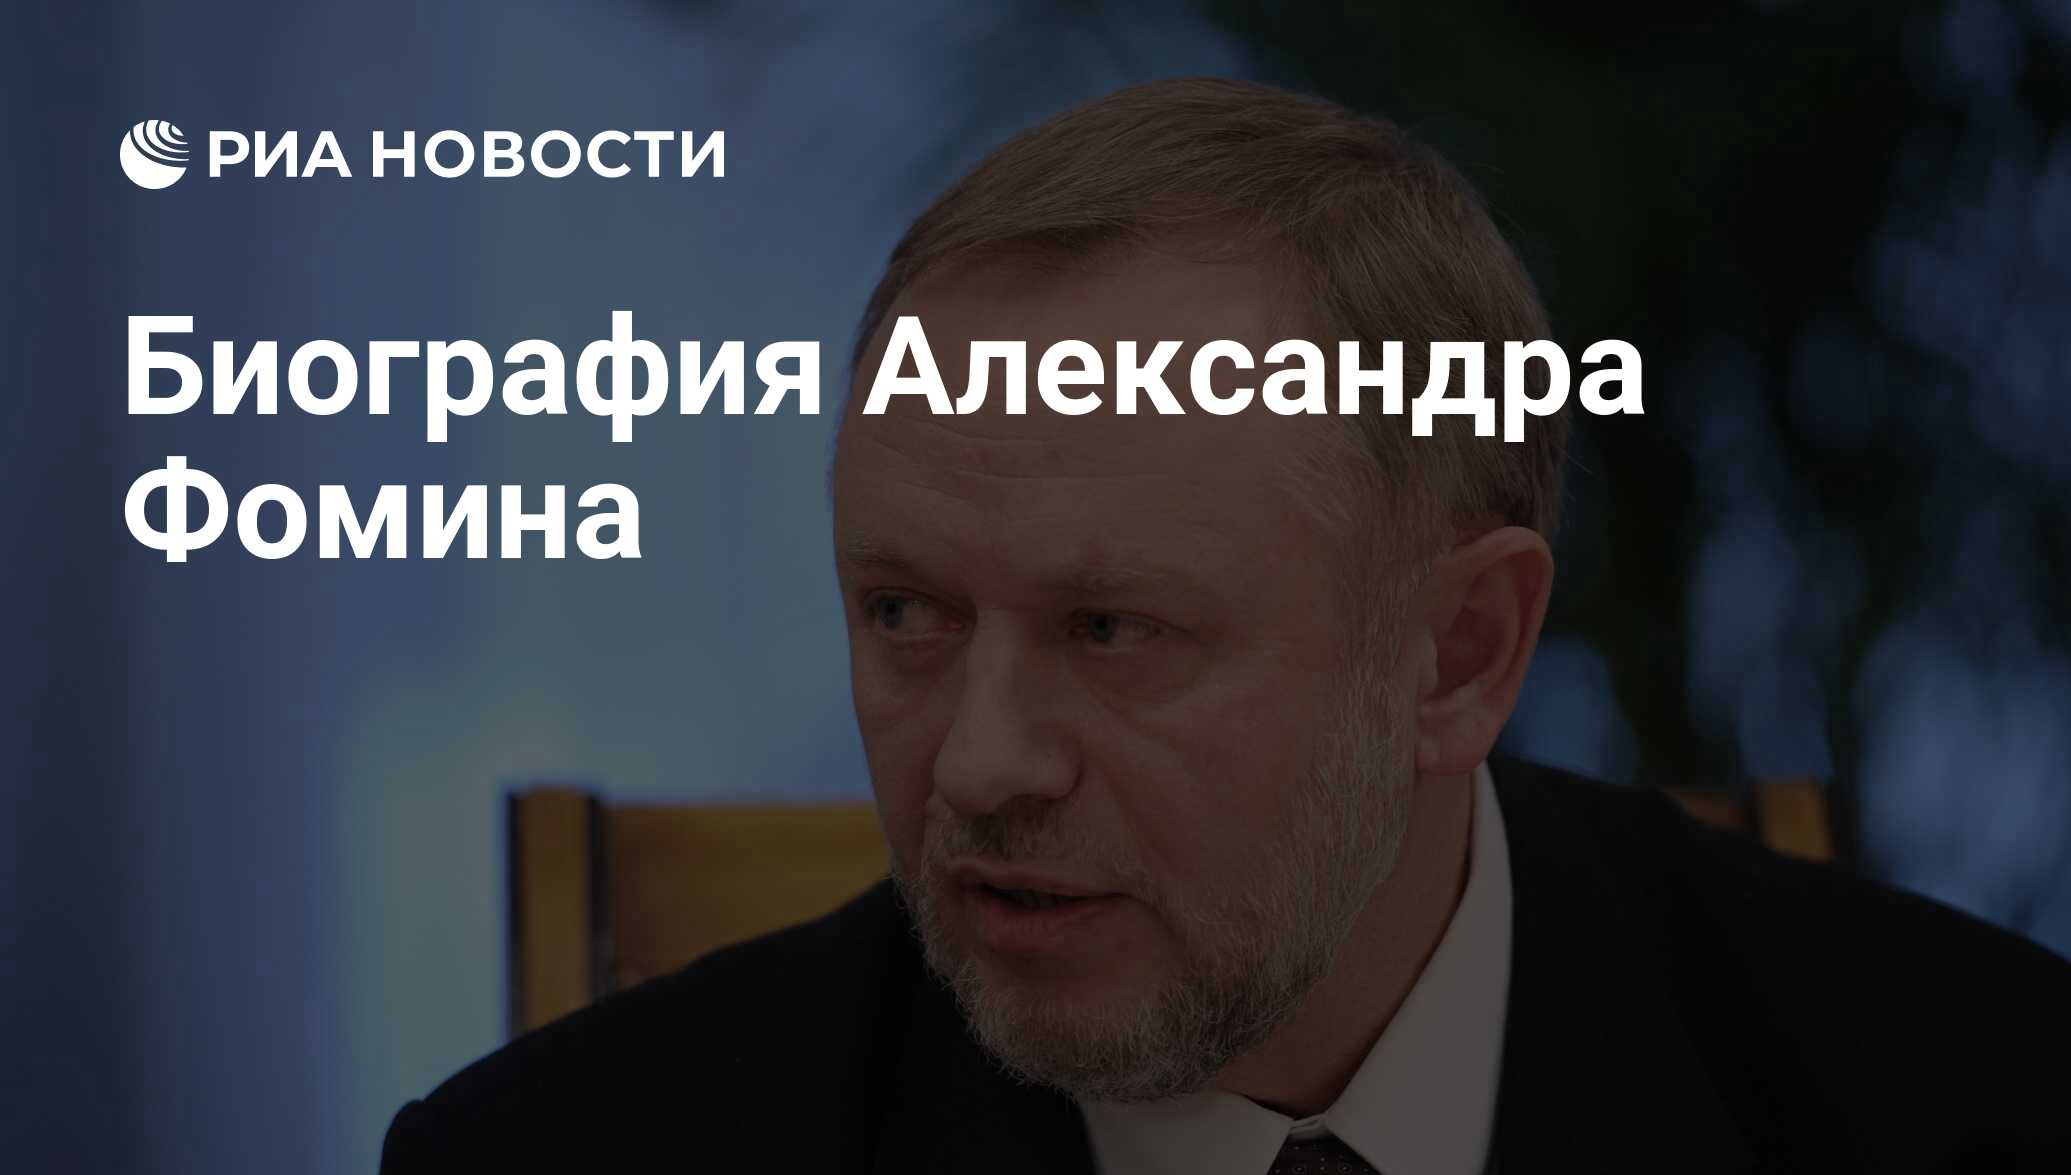 Биография Александра Фомина - РИА Новости, 03.03.2020